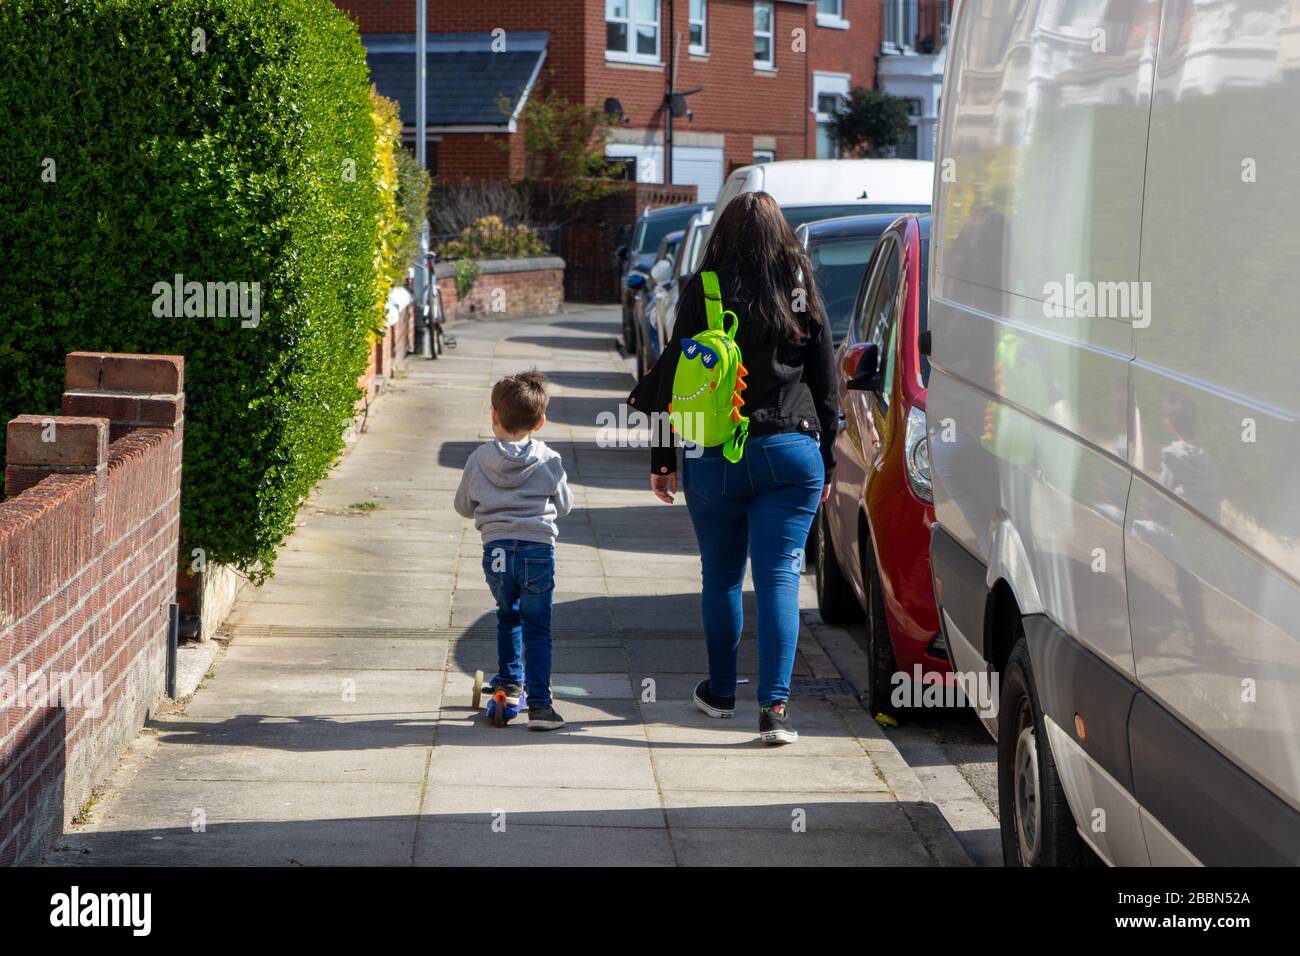 Eine Mutter, die neben einem kleinen Kind spazieren geht, das einen Roller fährt Stockfoto